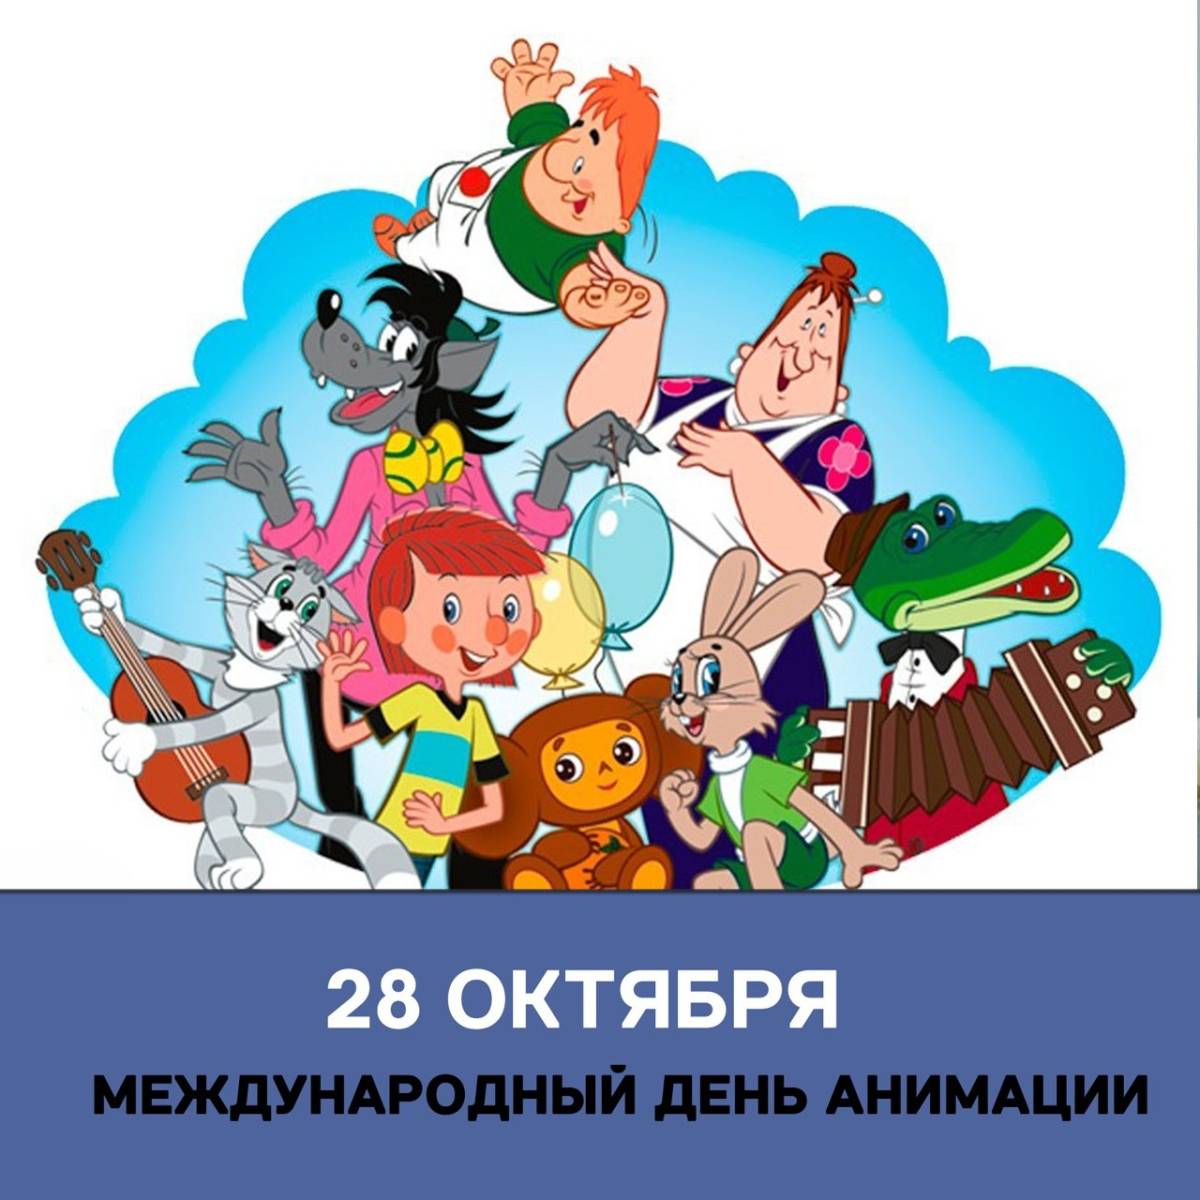 Международный день анимации. Всемирный день мультфильмов. Всемирный день анимации 28 октября. 28 Октября день мультфильмов. День анимации мероприятие